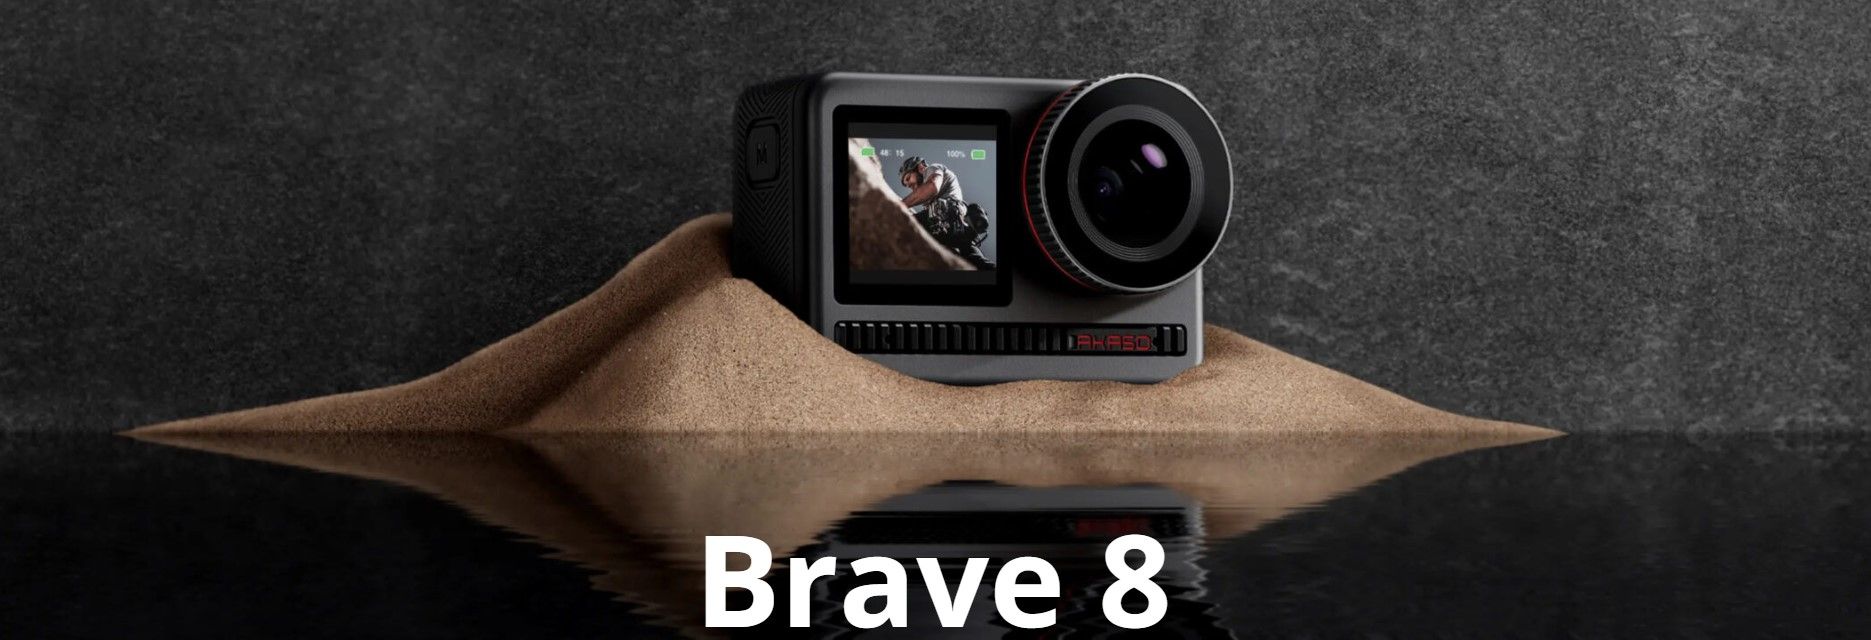 moderní akční kamera akaso brave 8 krásné fotografie vysoce kvalitní videa různé režimy nabíjecí baterie vysoká odolnost